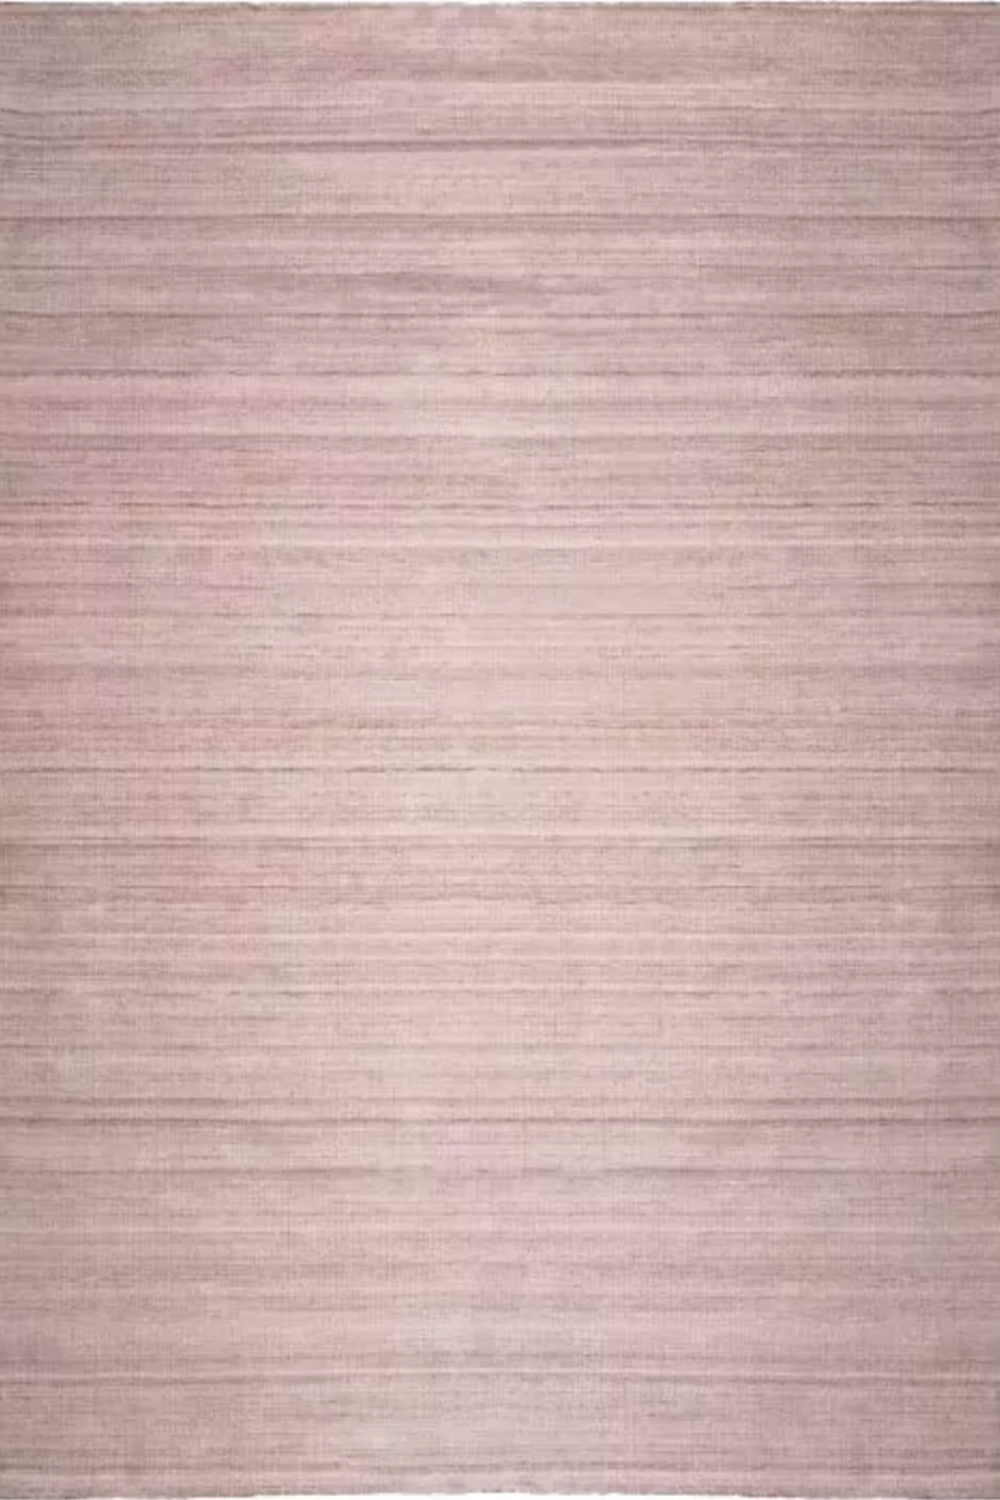 Taupe Hand-Woven Outdoor Carpet 10&#039; x 13&#039; Eichholtz Loriano Eichholtz - OROA